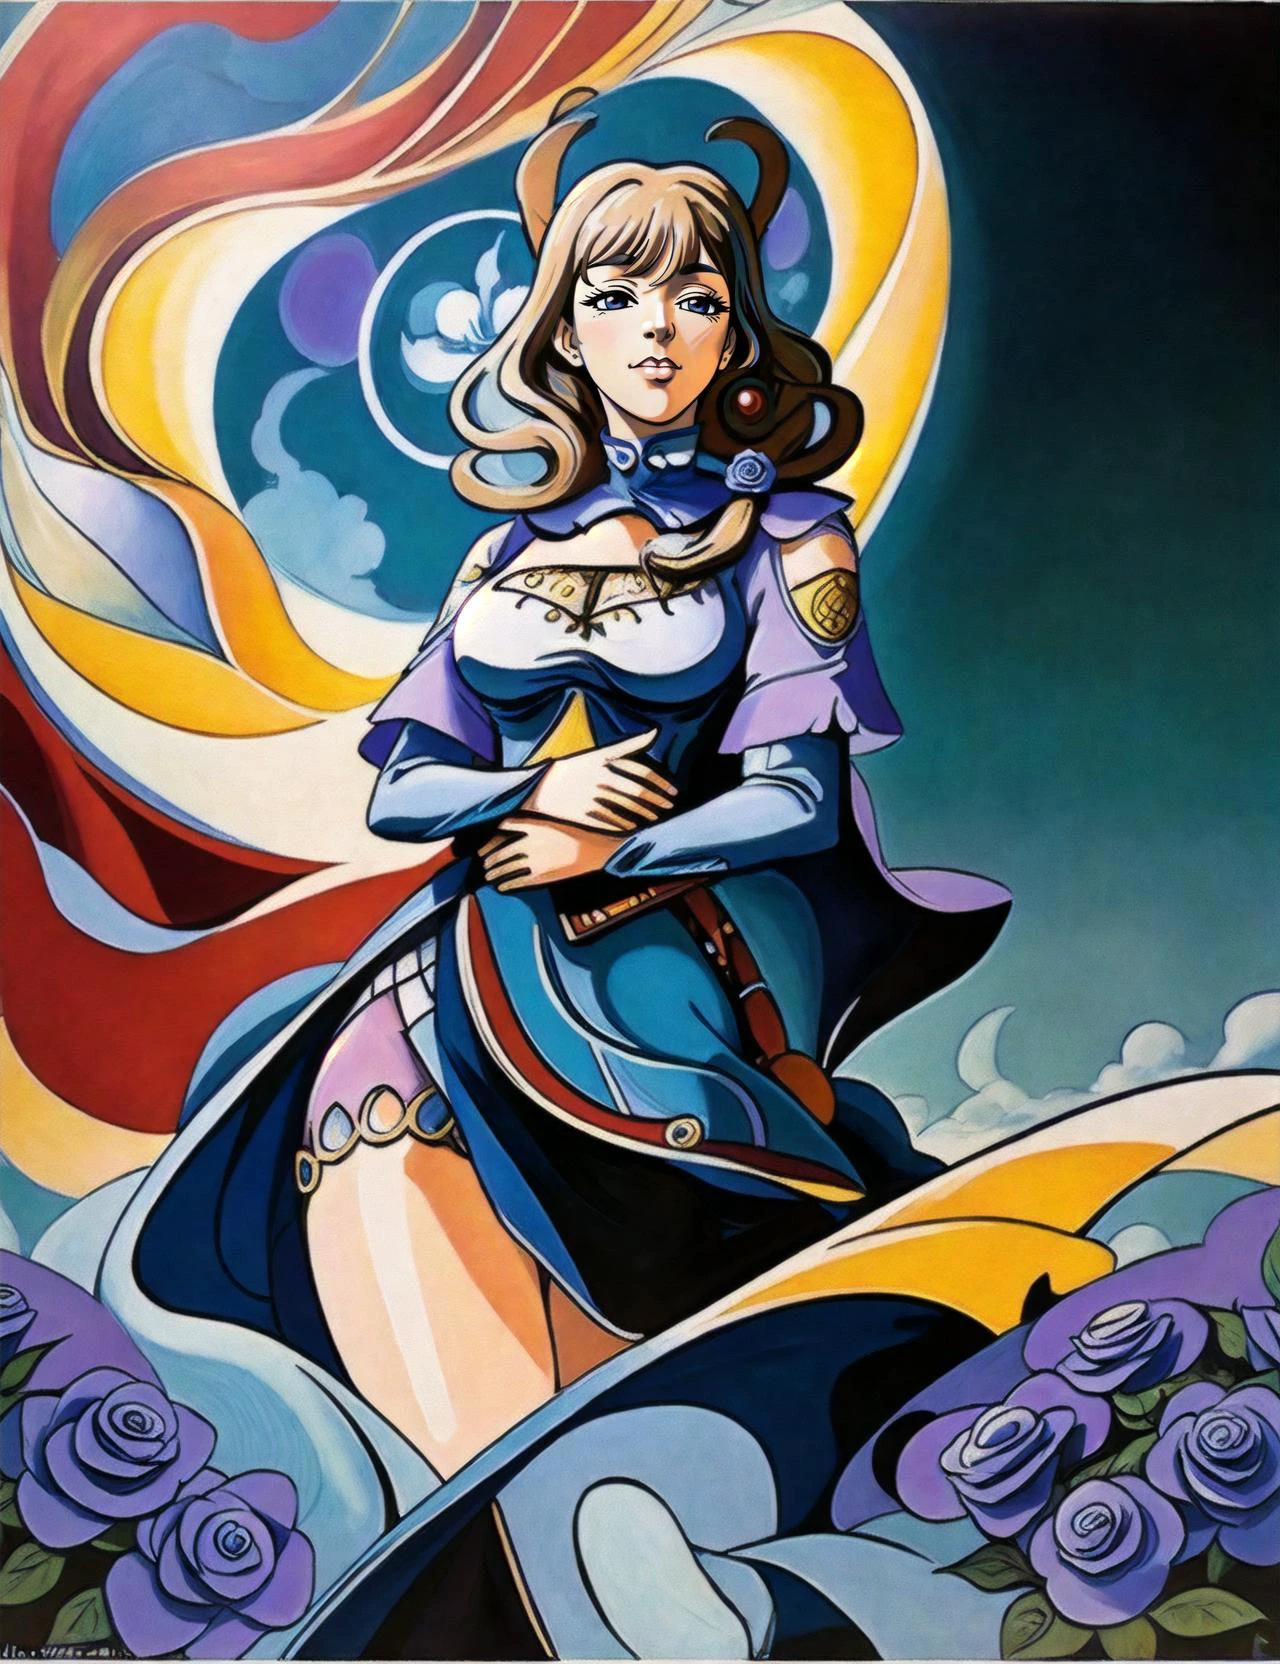 estilo 90, ilustración, estilo retro (por Katsuhiro Otomo), Fantasía oscura (animado:1.2), (ojos grandes:1.1) , manga, sonriente, imáx, complejo detallado, (mejor calidad:1.2), ((animado)) una chica gentil y mágica (Manos abrazando a una criatura mágica.:1.2), Hermoso campo de rosas azules en el fondo, (impacto genshin:1.1), (definición adicional:1.3), (( por Ali Erturk)) 